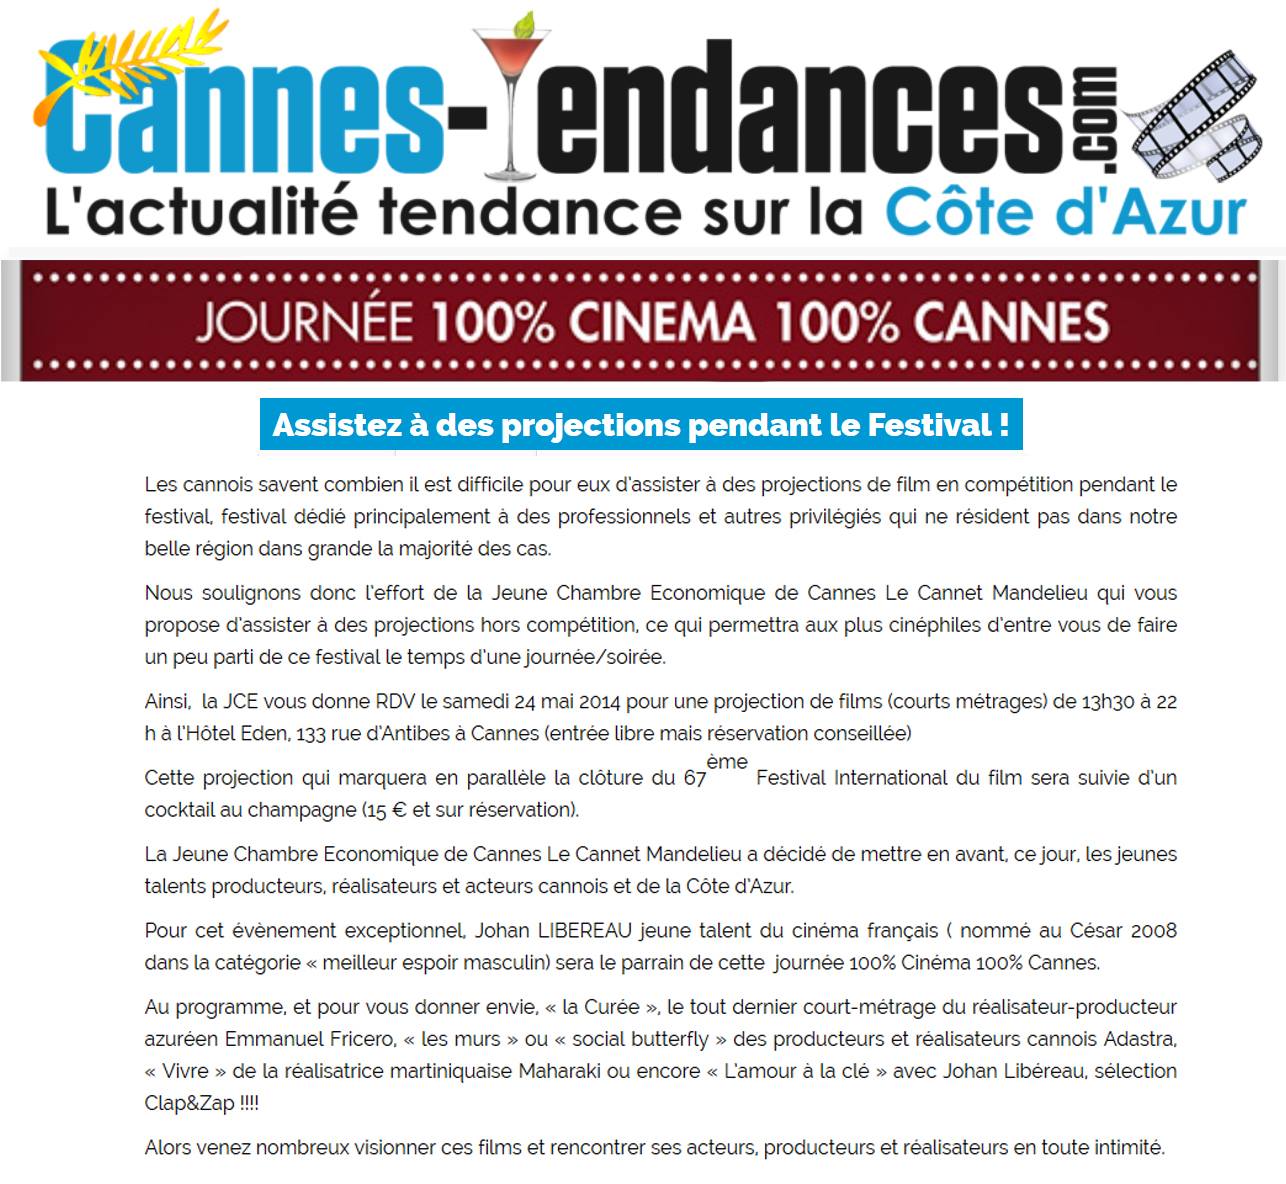 Cannes Tendances